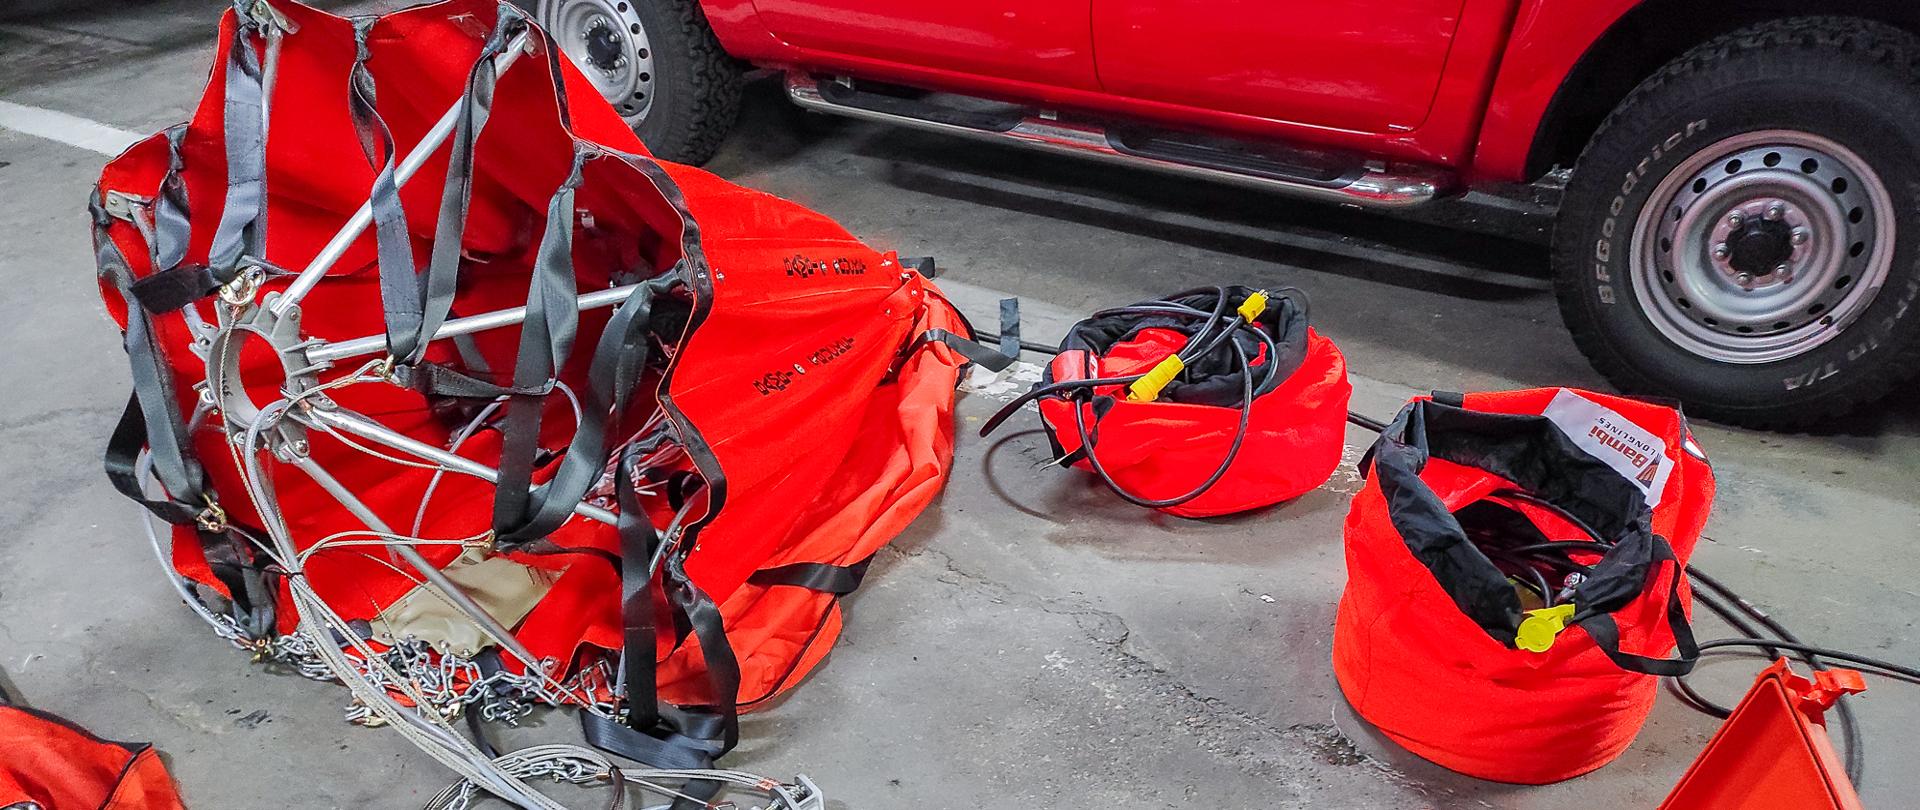 Zdjęcie przedstawia komplet wyposażenia podwieszonego zbiornika pod śmigłowiec typu "Bambi Bucket". Zbiornik koloru pomarańczowego oraz niezbędny osprzęt leży rozłożony na podłodze w garażu jednostki ratowniczo-gaśniczej PSP.